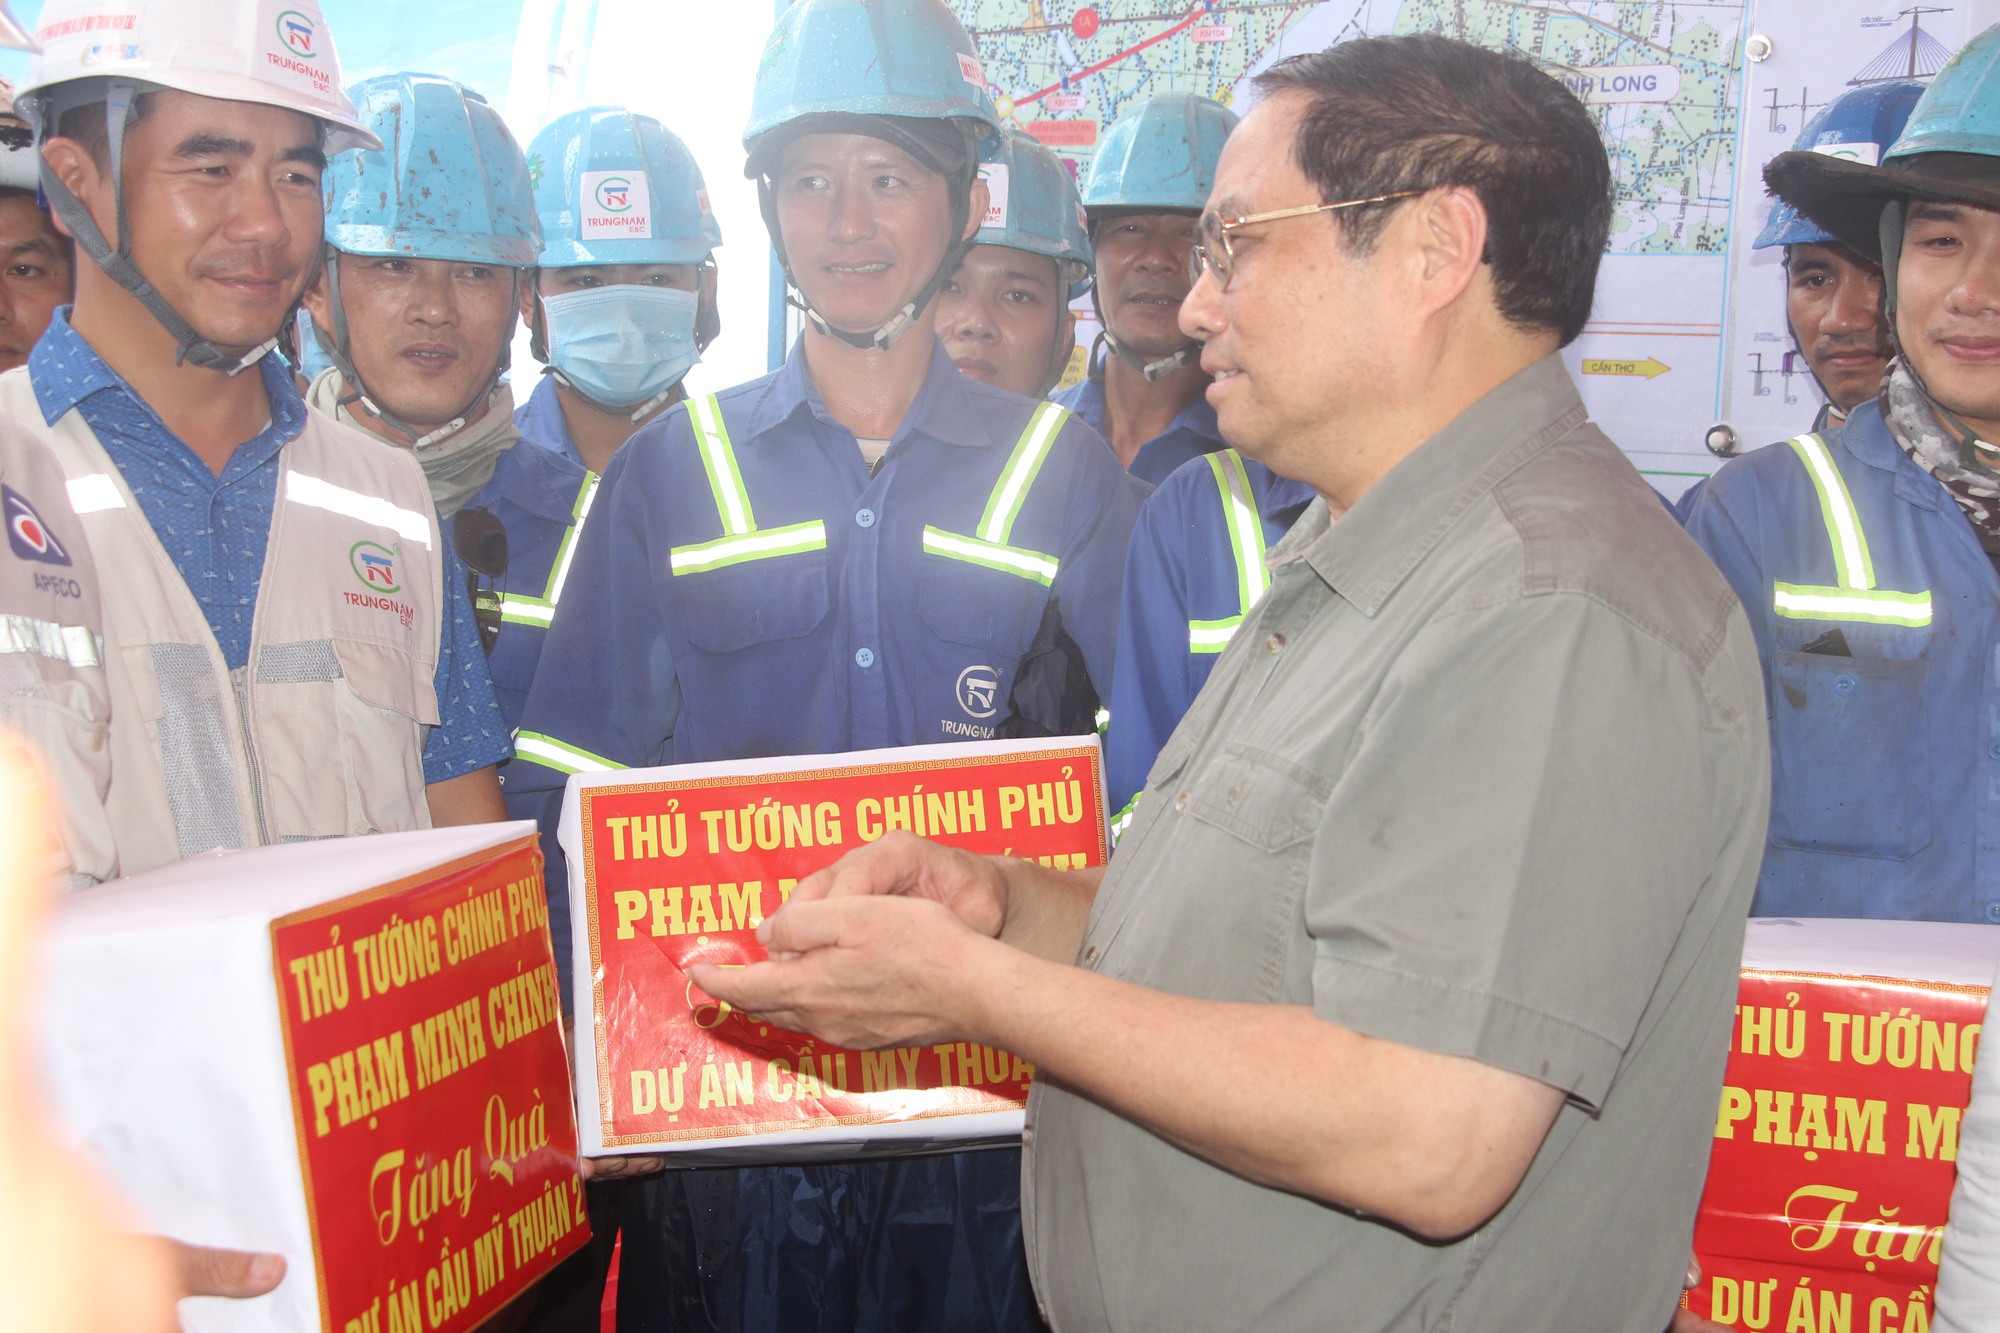 Thủ tướng Phạm Minh Chính kiểm tra dự án cầu Mỹ Thuận 2 và cao tốc Mỹ Thuận - Cần Thơ - Ảnh 4.